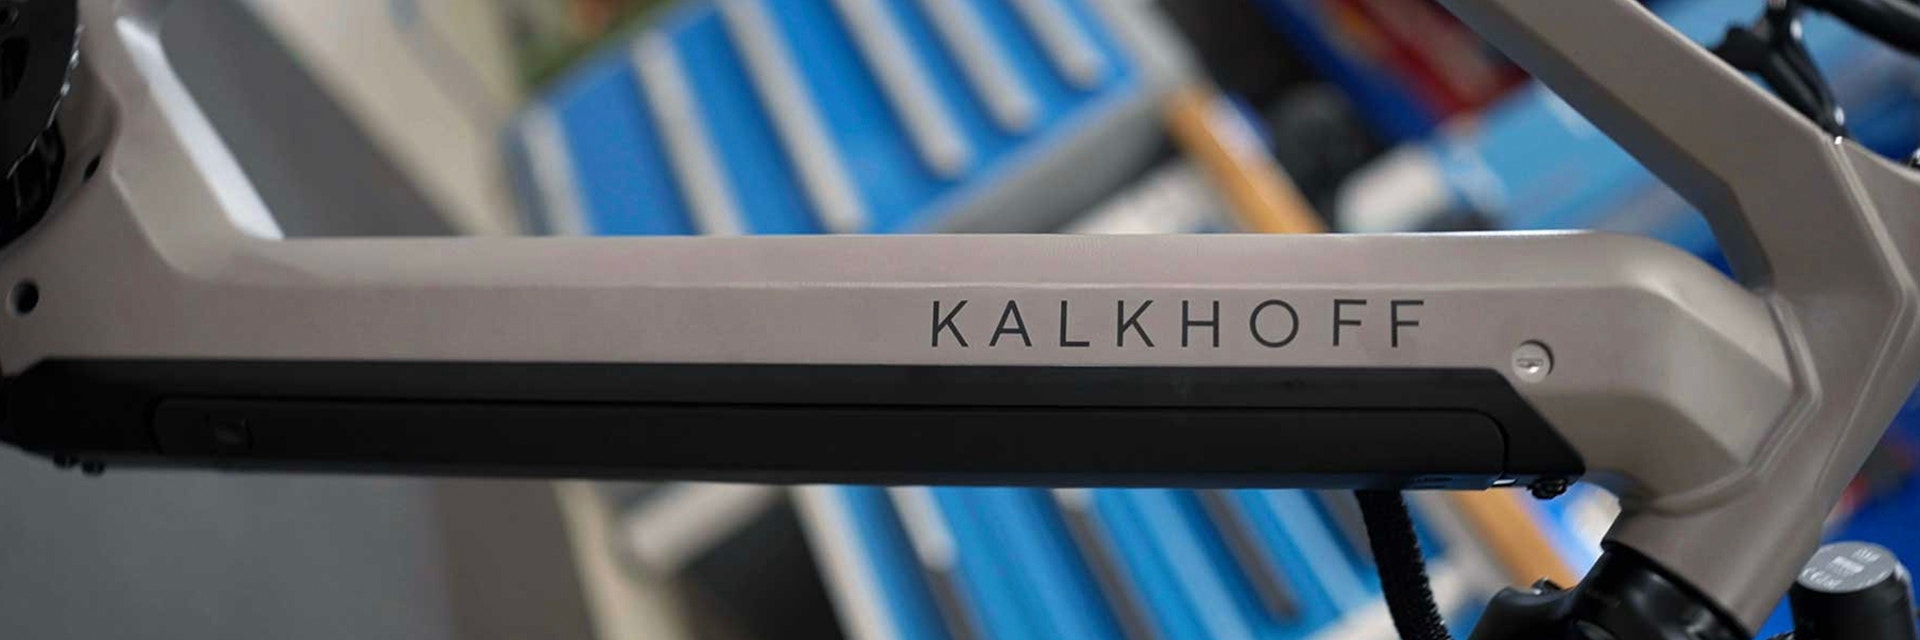 hd-kalkhoff-metal-3d-printed-bike-frame.jpg